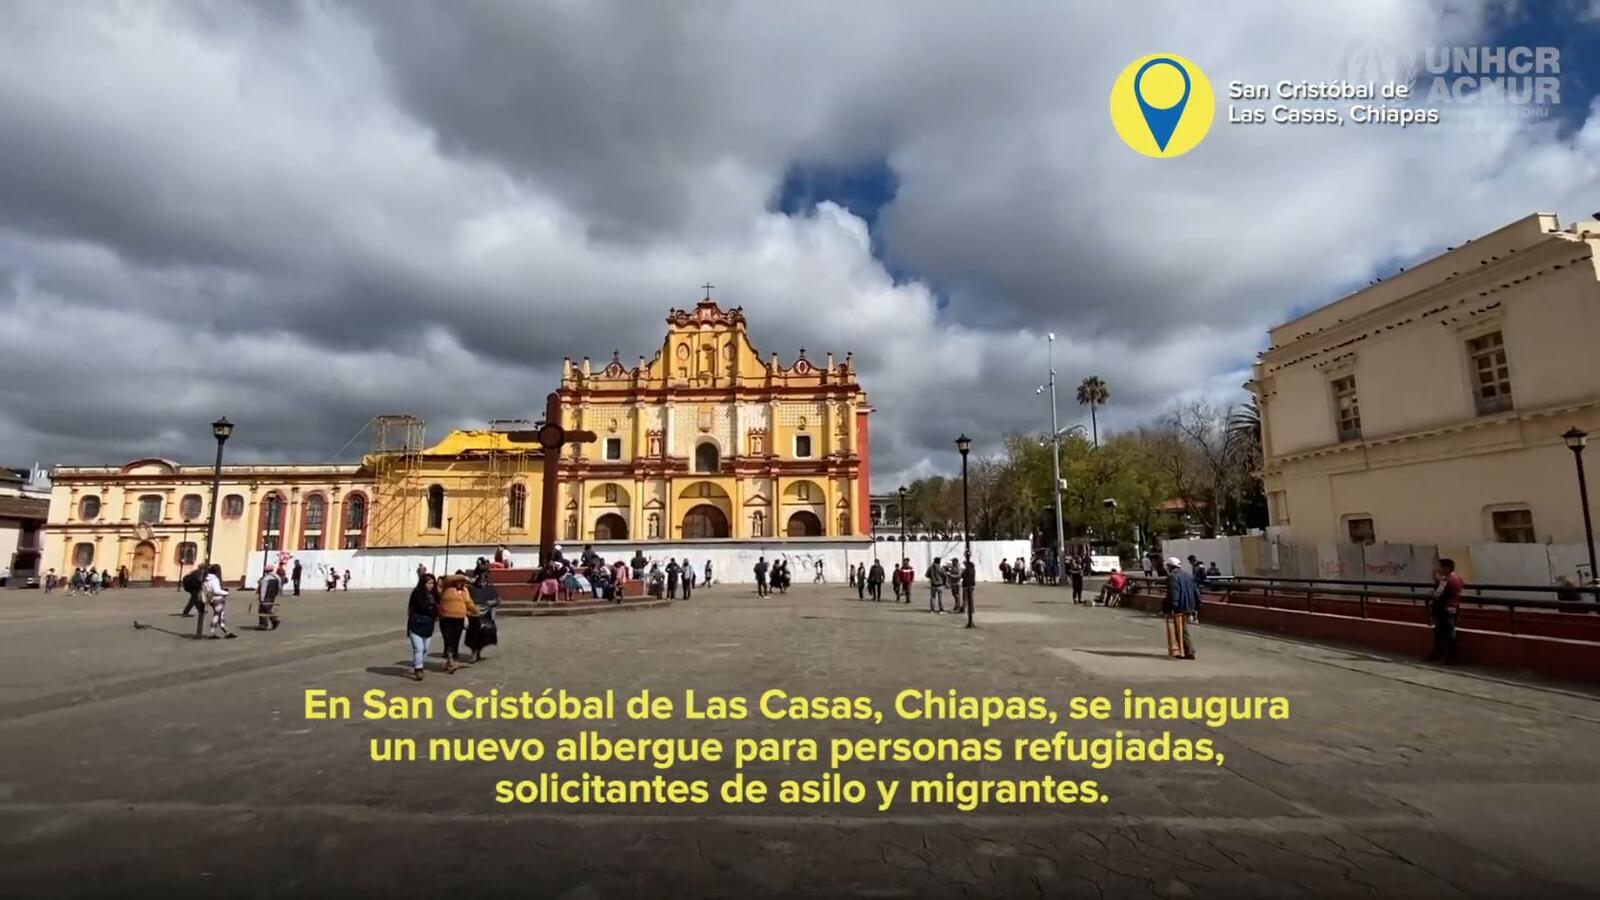 Albergue en San Cristóbal de Las Casas abre sus puertas a personas  refugiadas, solicitantes de asilo y migrantes | UNHCR Mexico